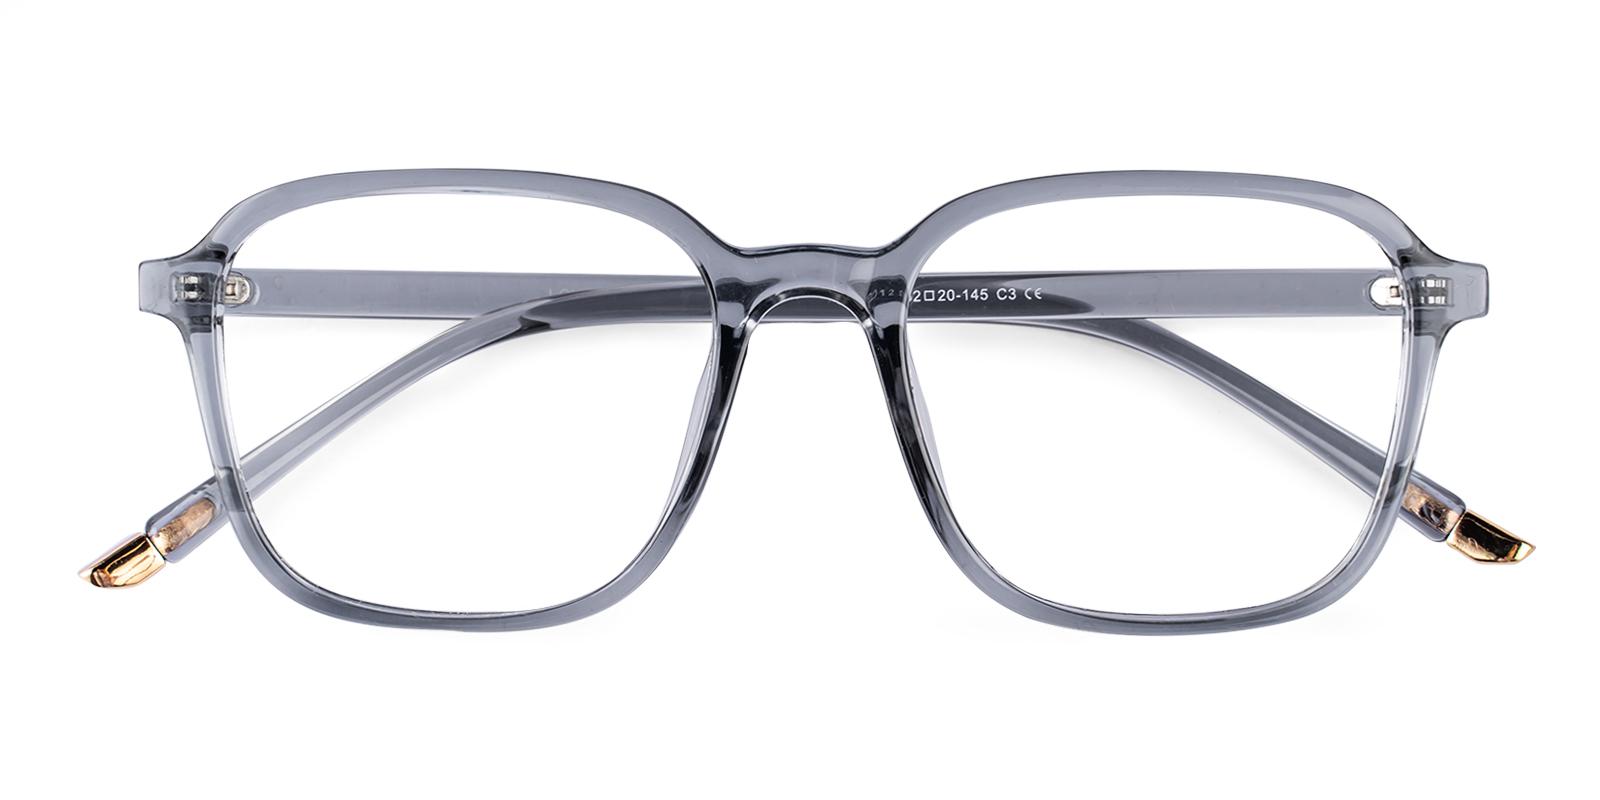 Viscos Gray Plastic Eyeglasses , UniversalBridgeFit Frames from ABBE Glasses